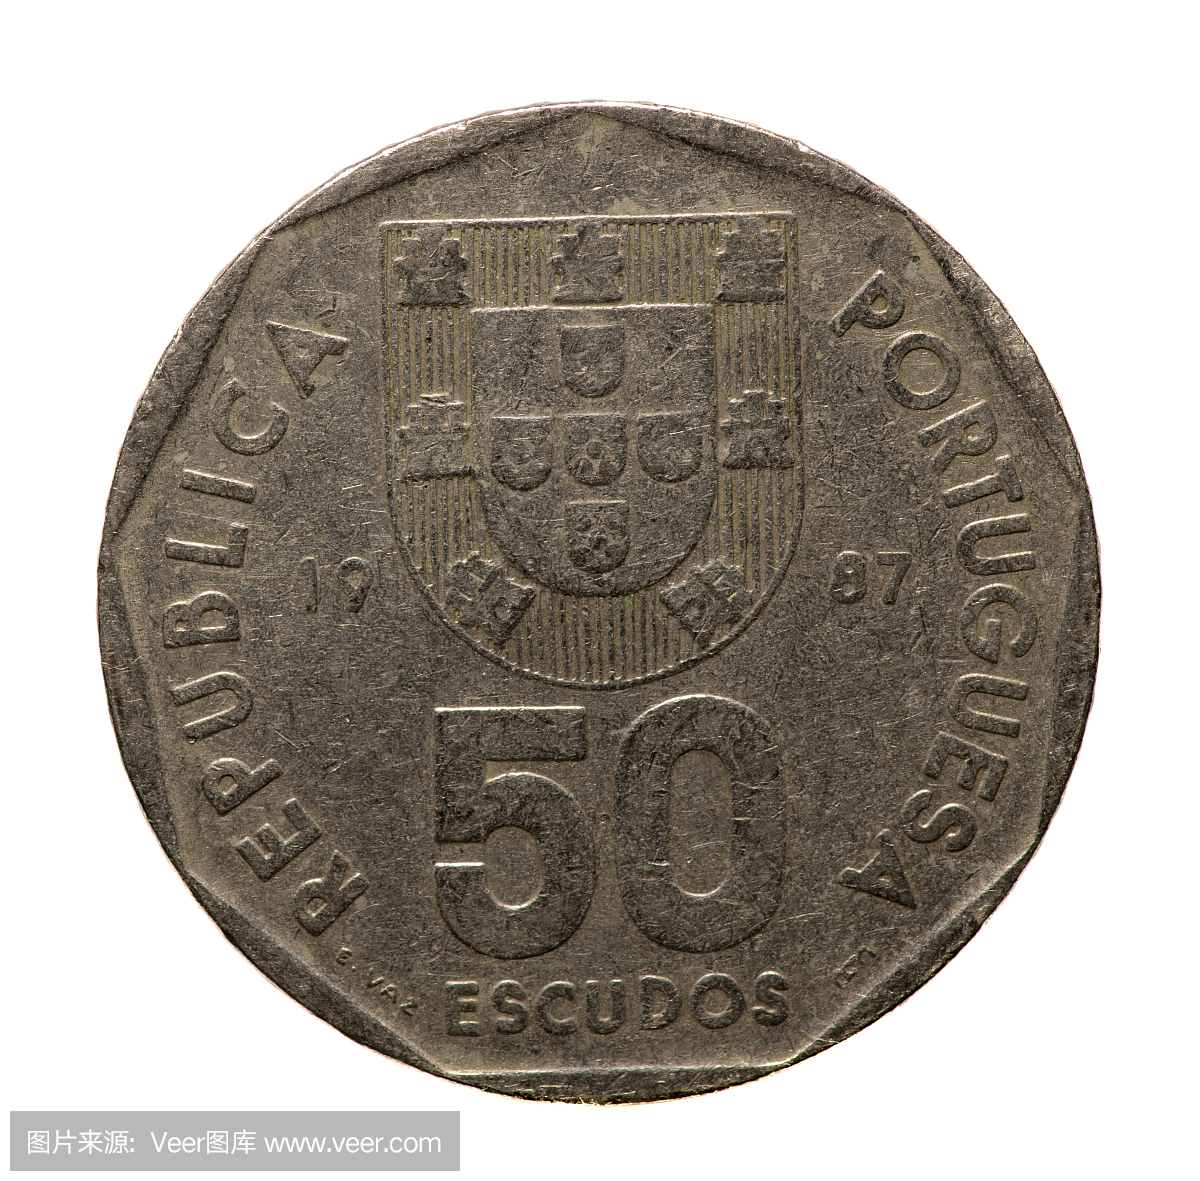 葡萄牙货币,葡萄牙纸币,埃斯库多,葡萄牙钞票